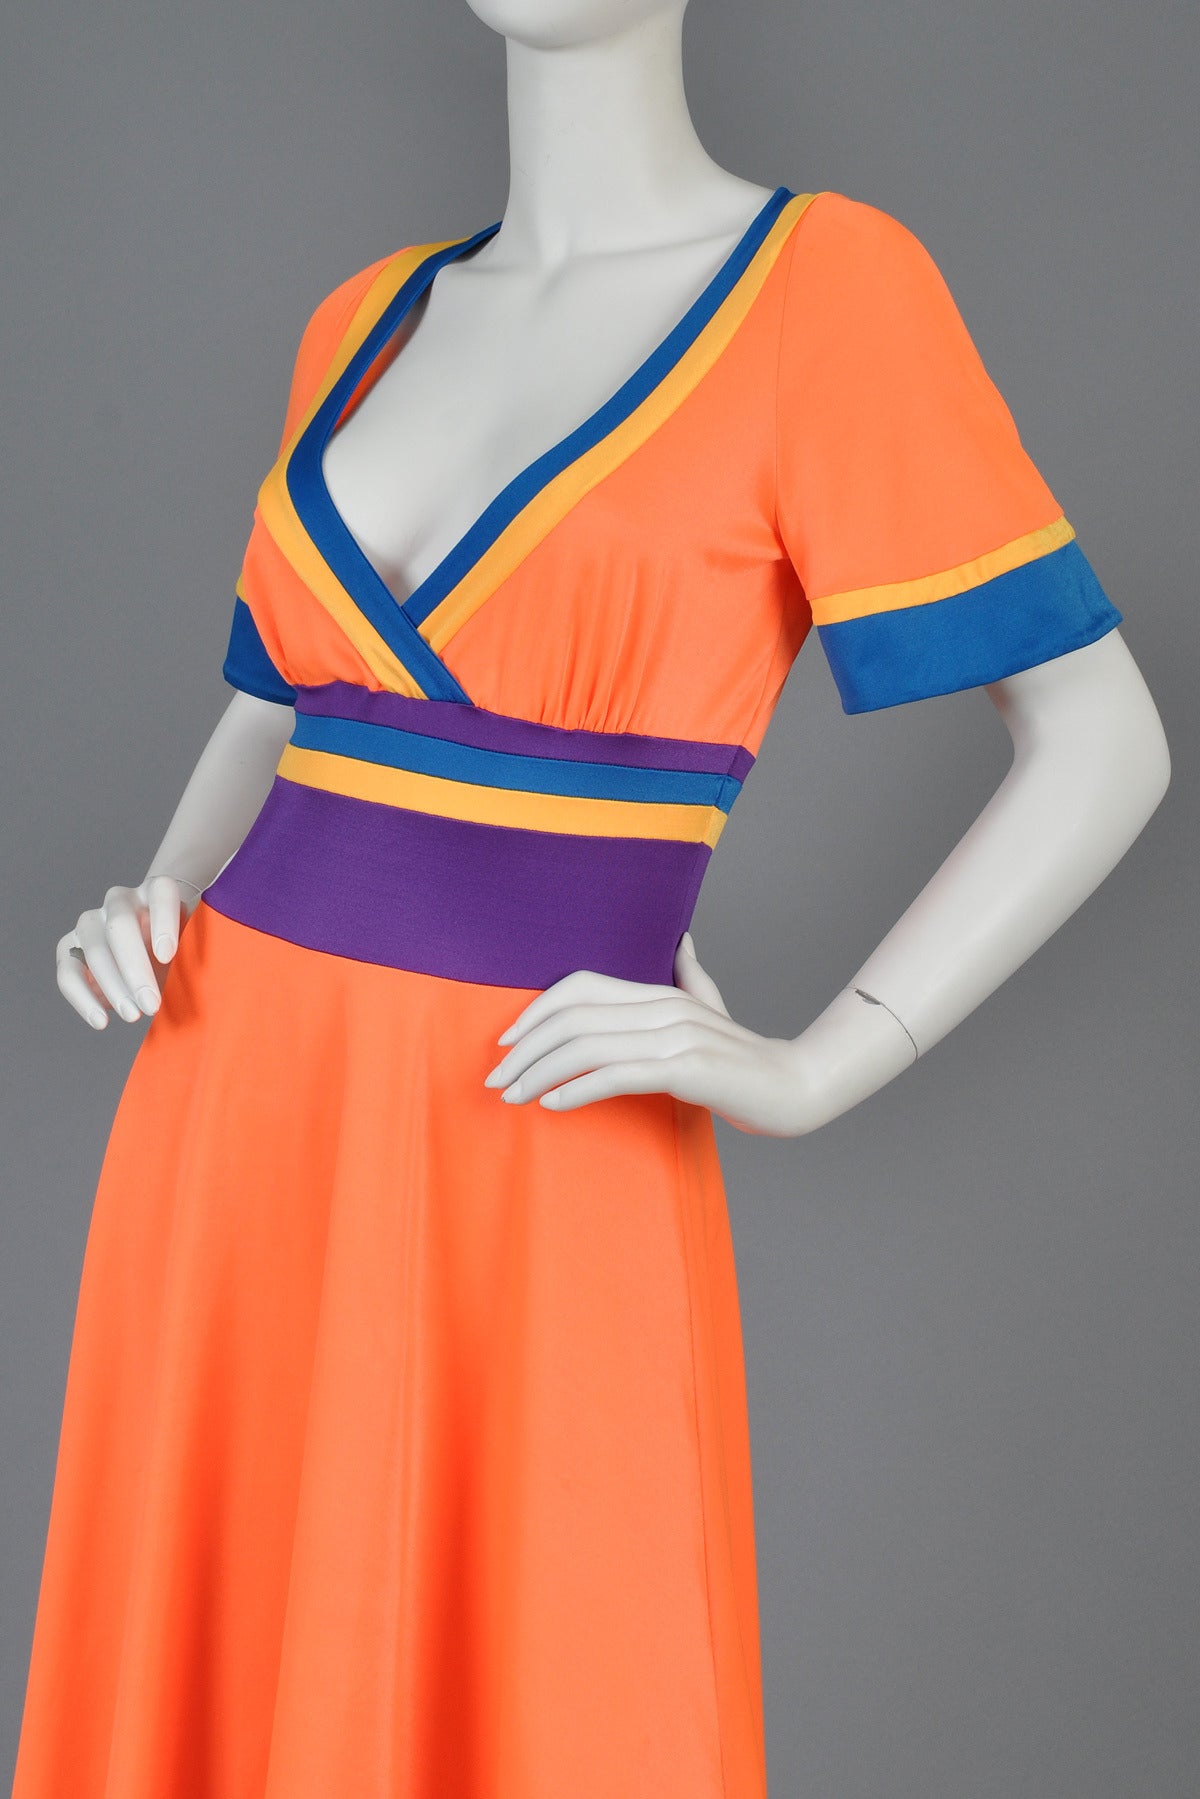 Giorgio di Sant'Angelo Colorblocked 1970s Dress 1